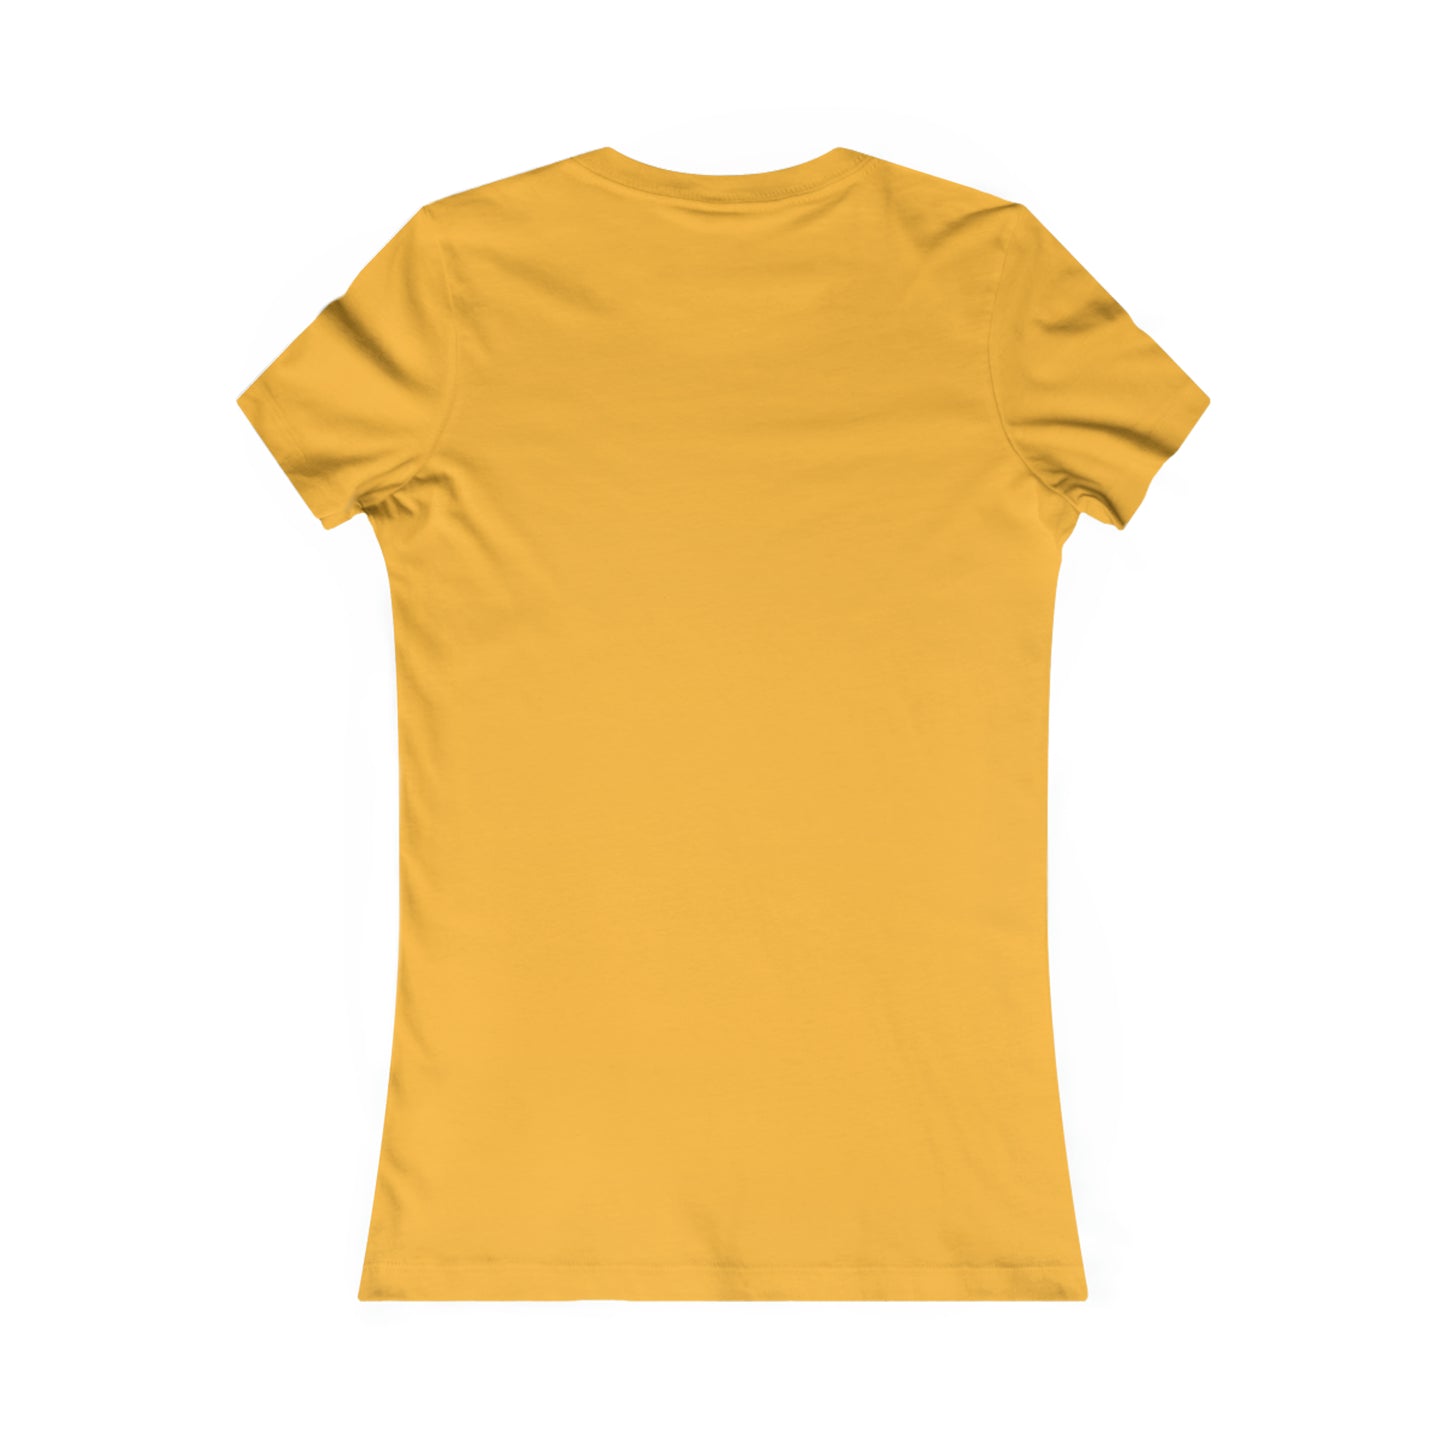 Dream Catcher Definition T-Shirt (Women's V-Cut)